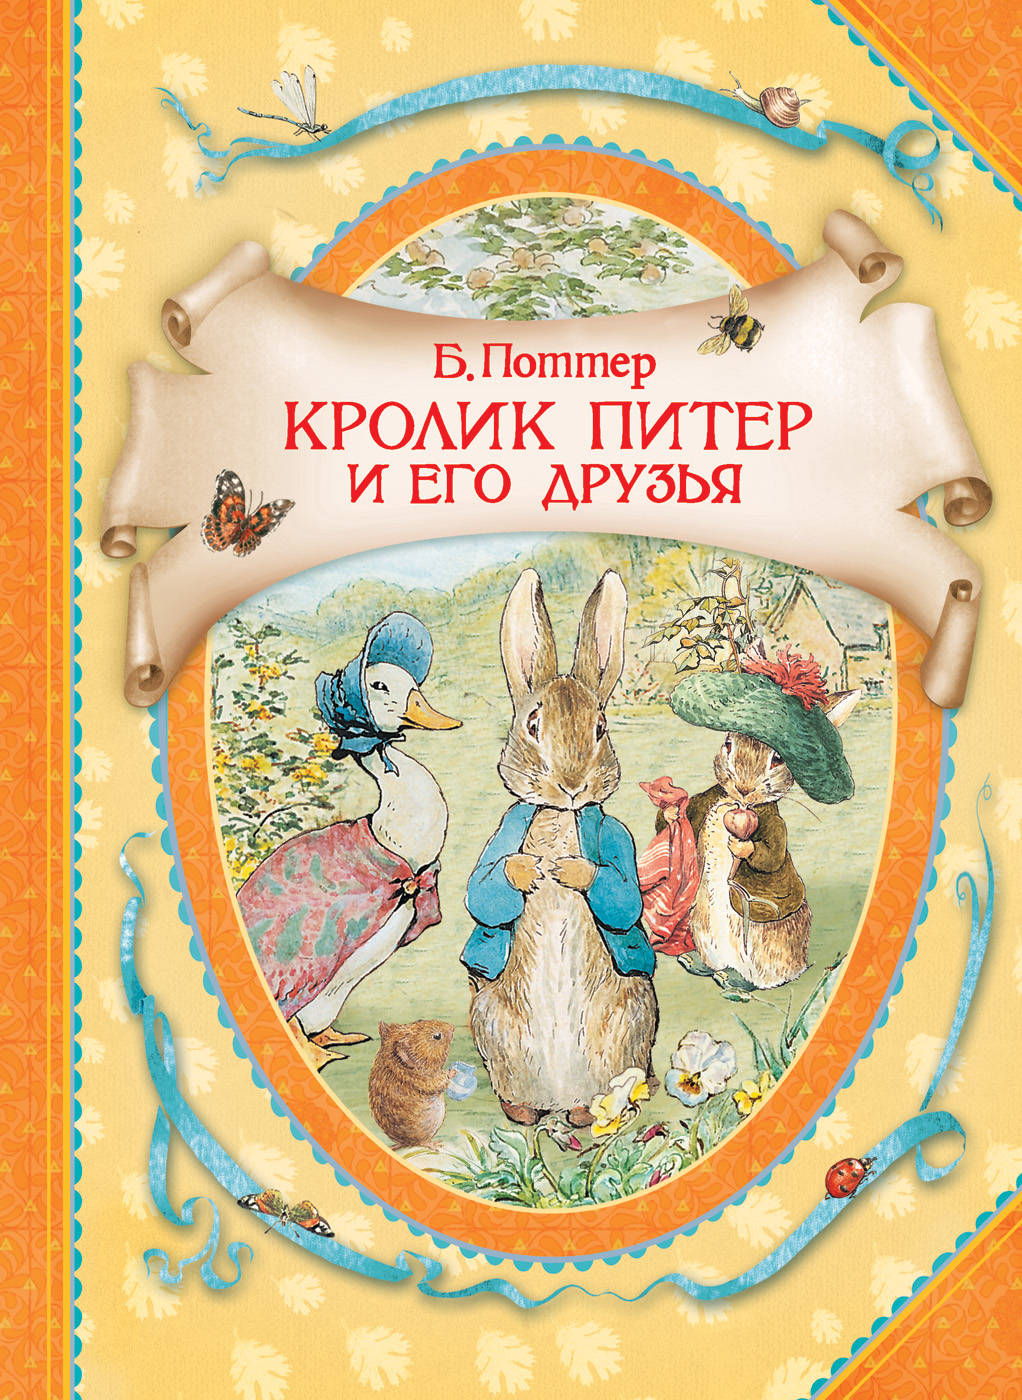 Книга кролика купить. Поттер кролик Питер и его друзья. Беатрис Поттер кролик Питер книга. Кролик Питер и его друзья Росмэн. Кролик Питер и его друзья книга.